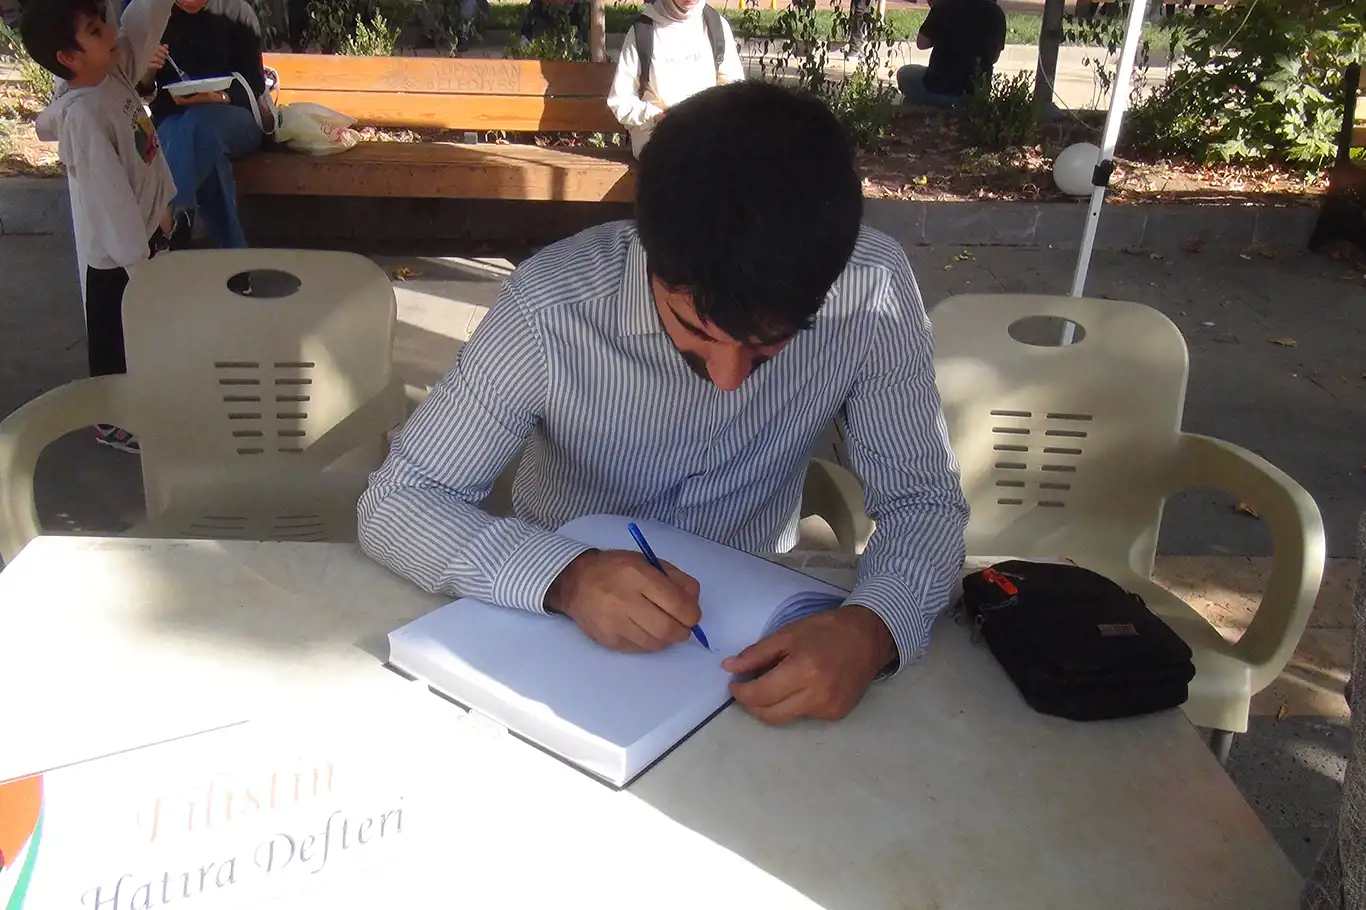 Vatandaşlar duygularını "Filistin Hatıra Defterine" yazdı